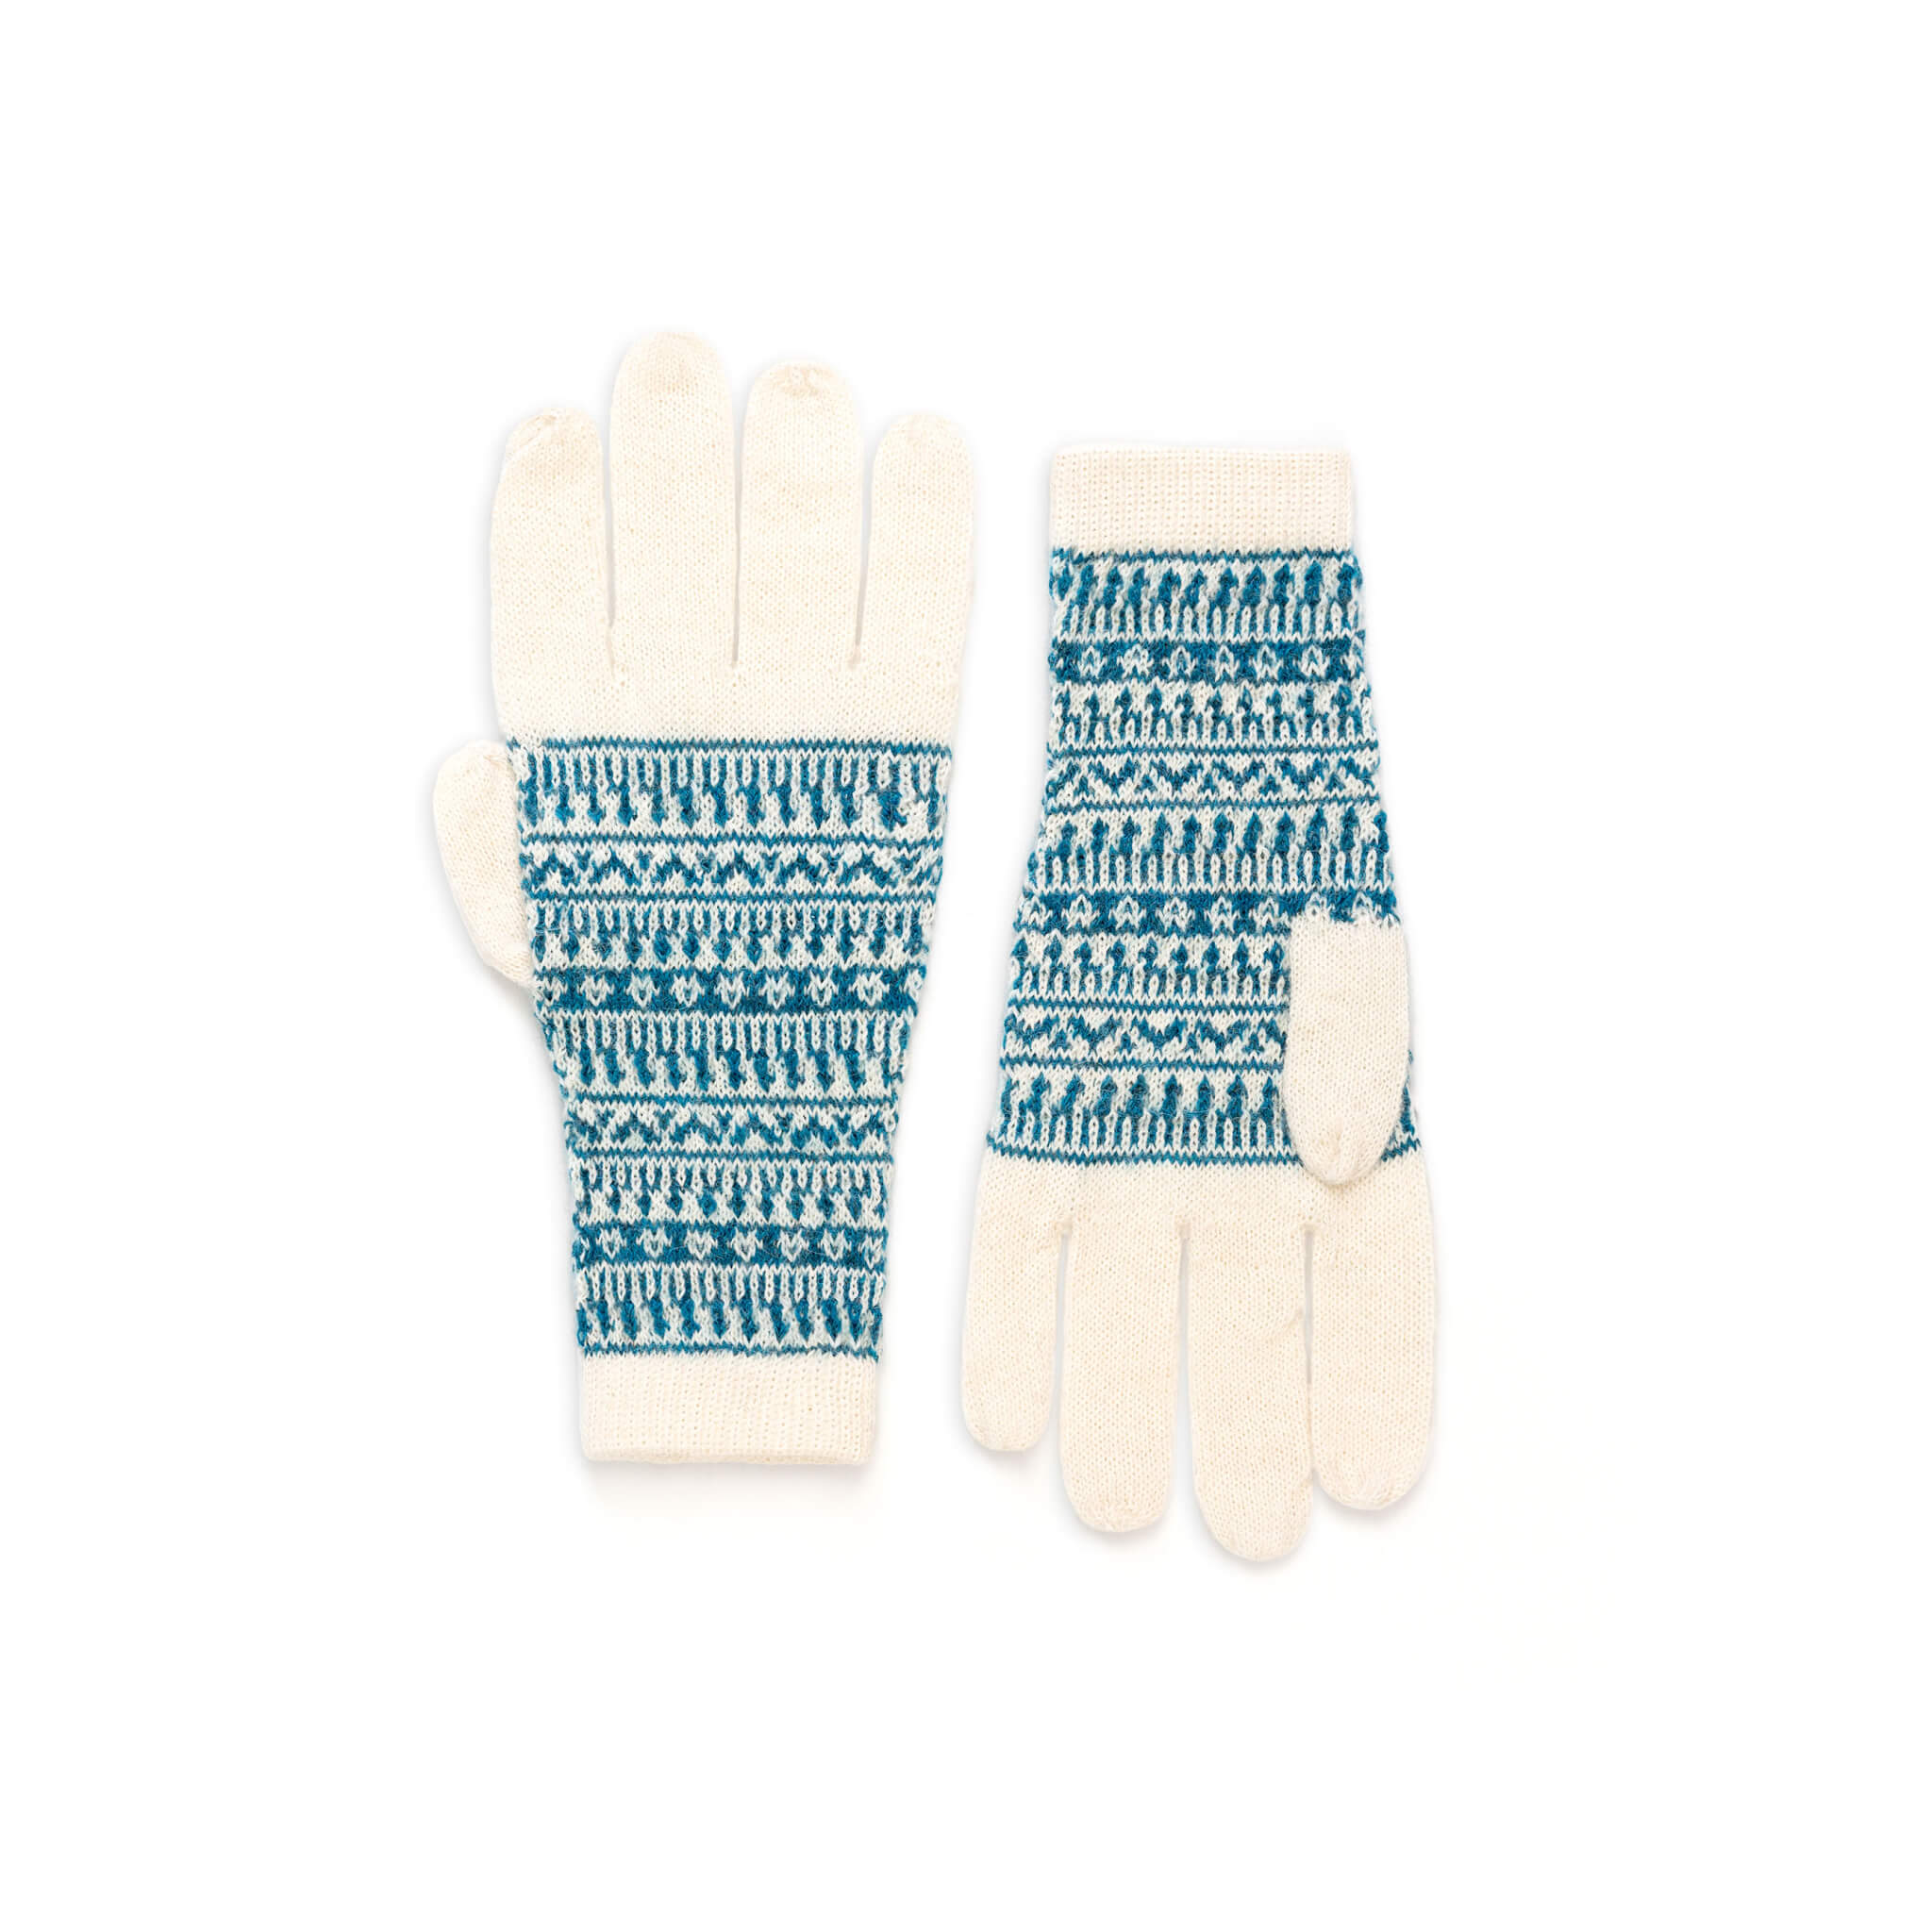 Dünne Alpaka Handschuhe für Damen und Herren von Alpakin mit Alpaka-Muster in weiß